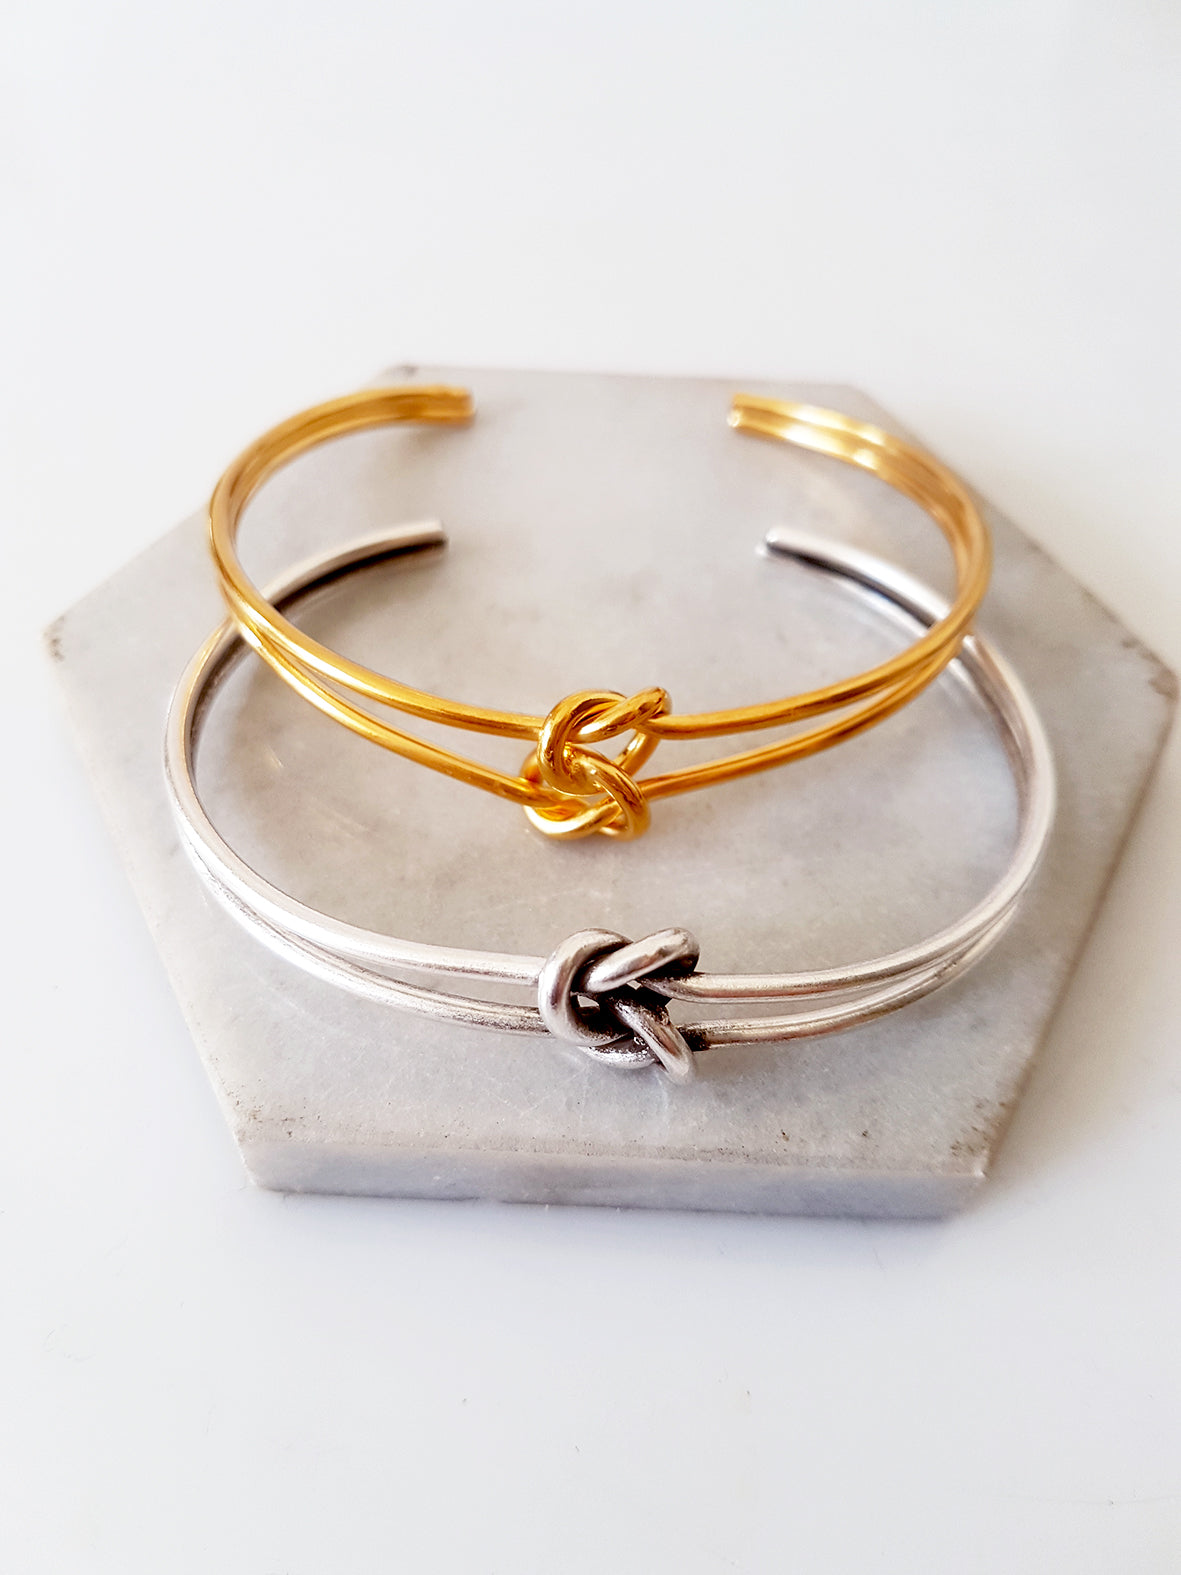 Double knot metal bracelet, package of 2 bracelets - SoCuteb2b